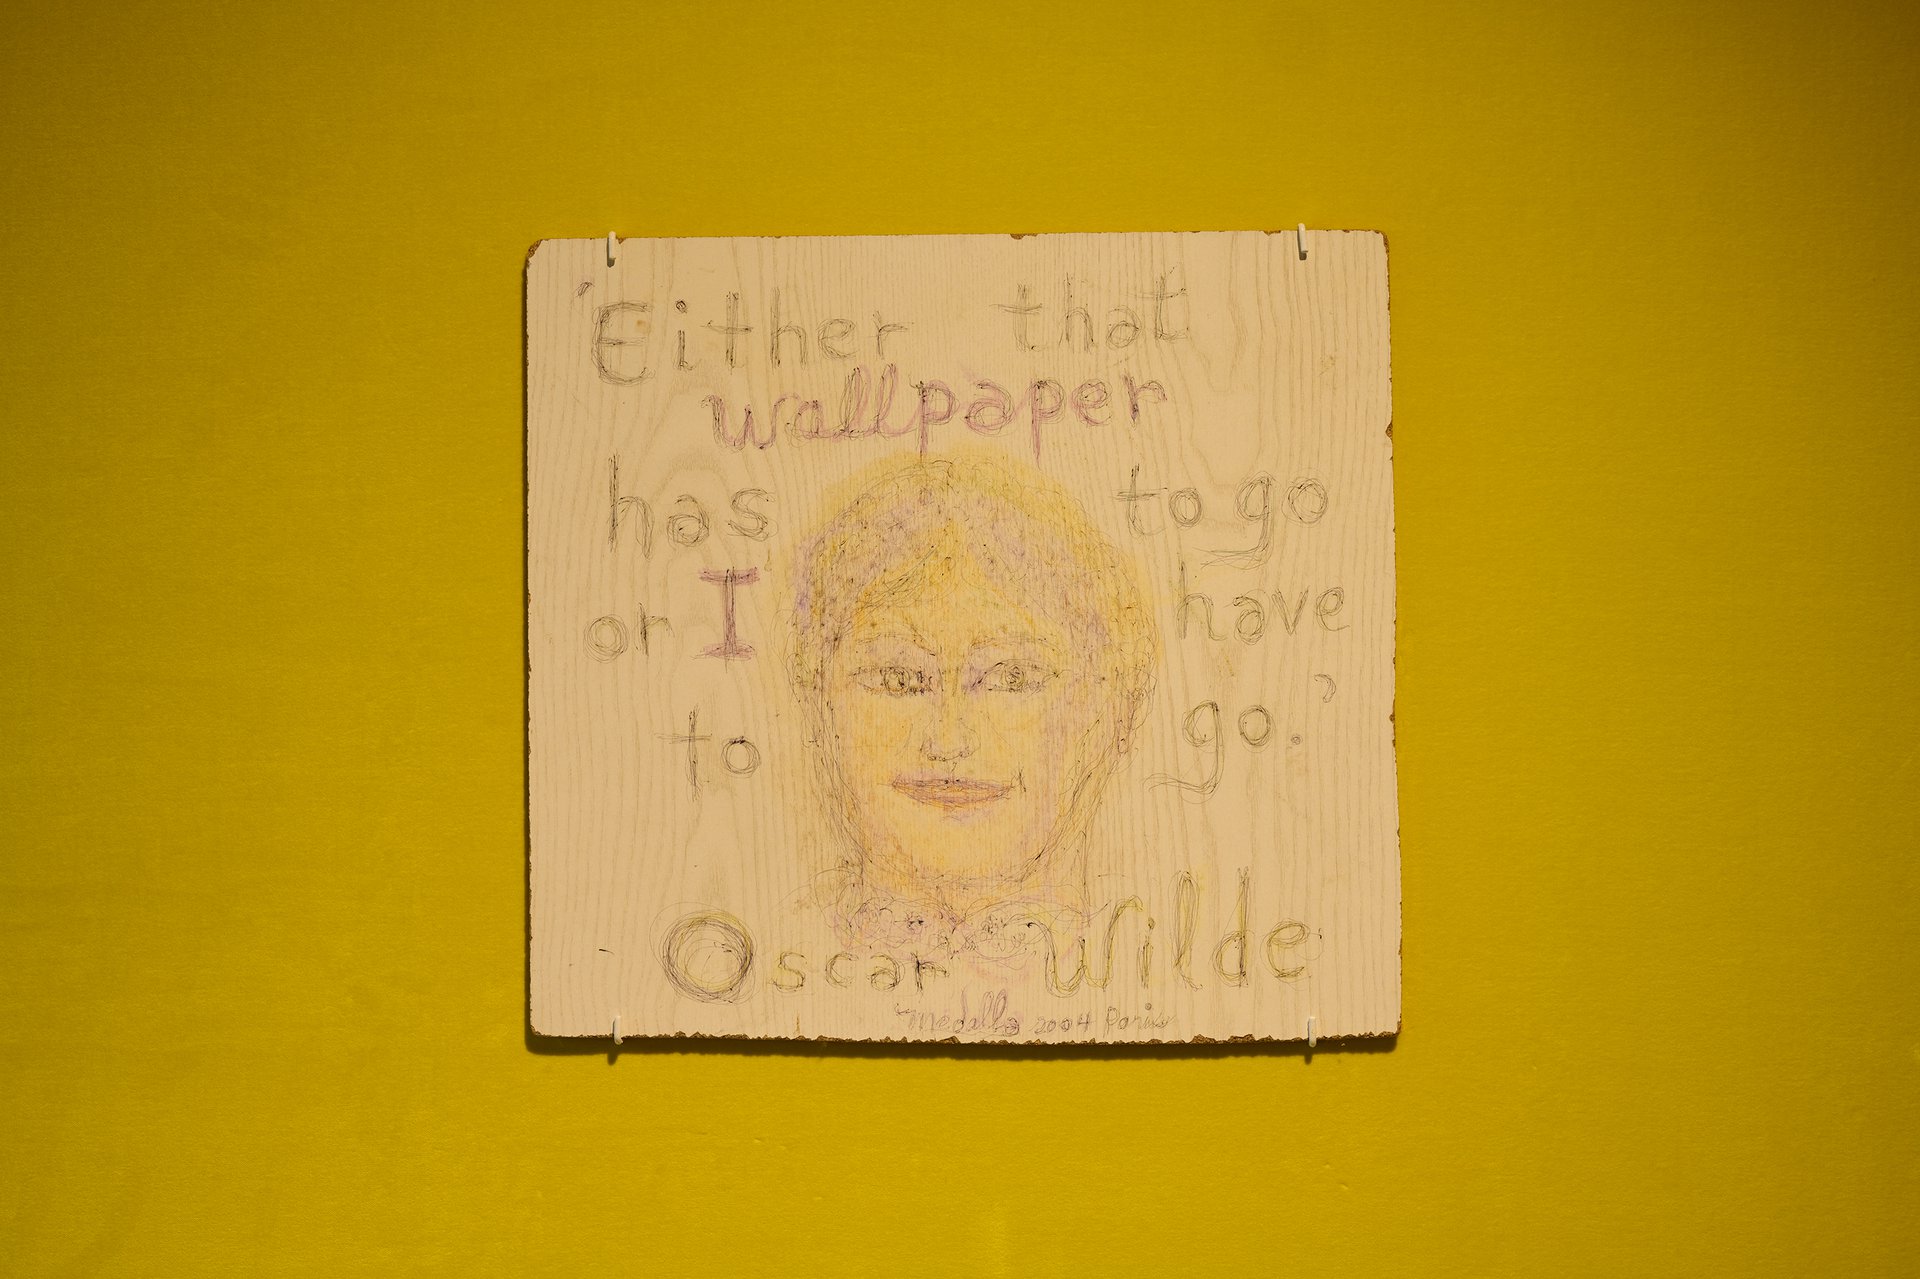 David Medalla, &#x27;Either that wallpaper has to go or I have to go.&#x27; Oscar Wilde, 2004, Kugelschreiber und Farbstift auf laminiertem Presspan, 40,8 x 38,3 x 0,7 cm, Bonner Kunstverein, 2021. Foto: Mareike Tocha.